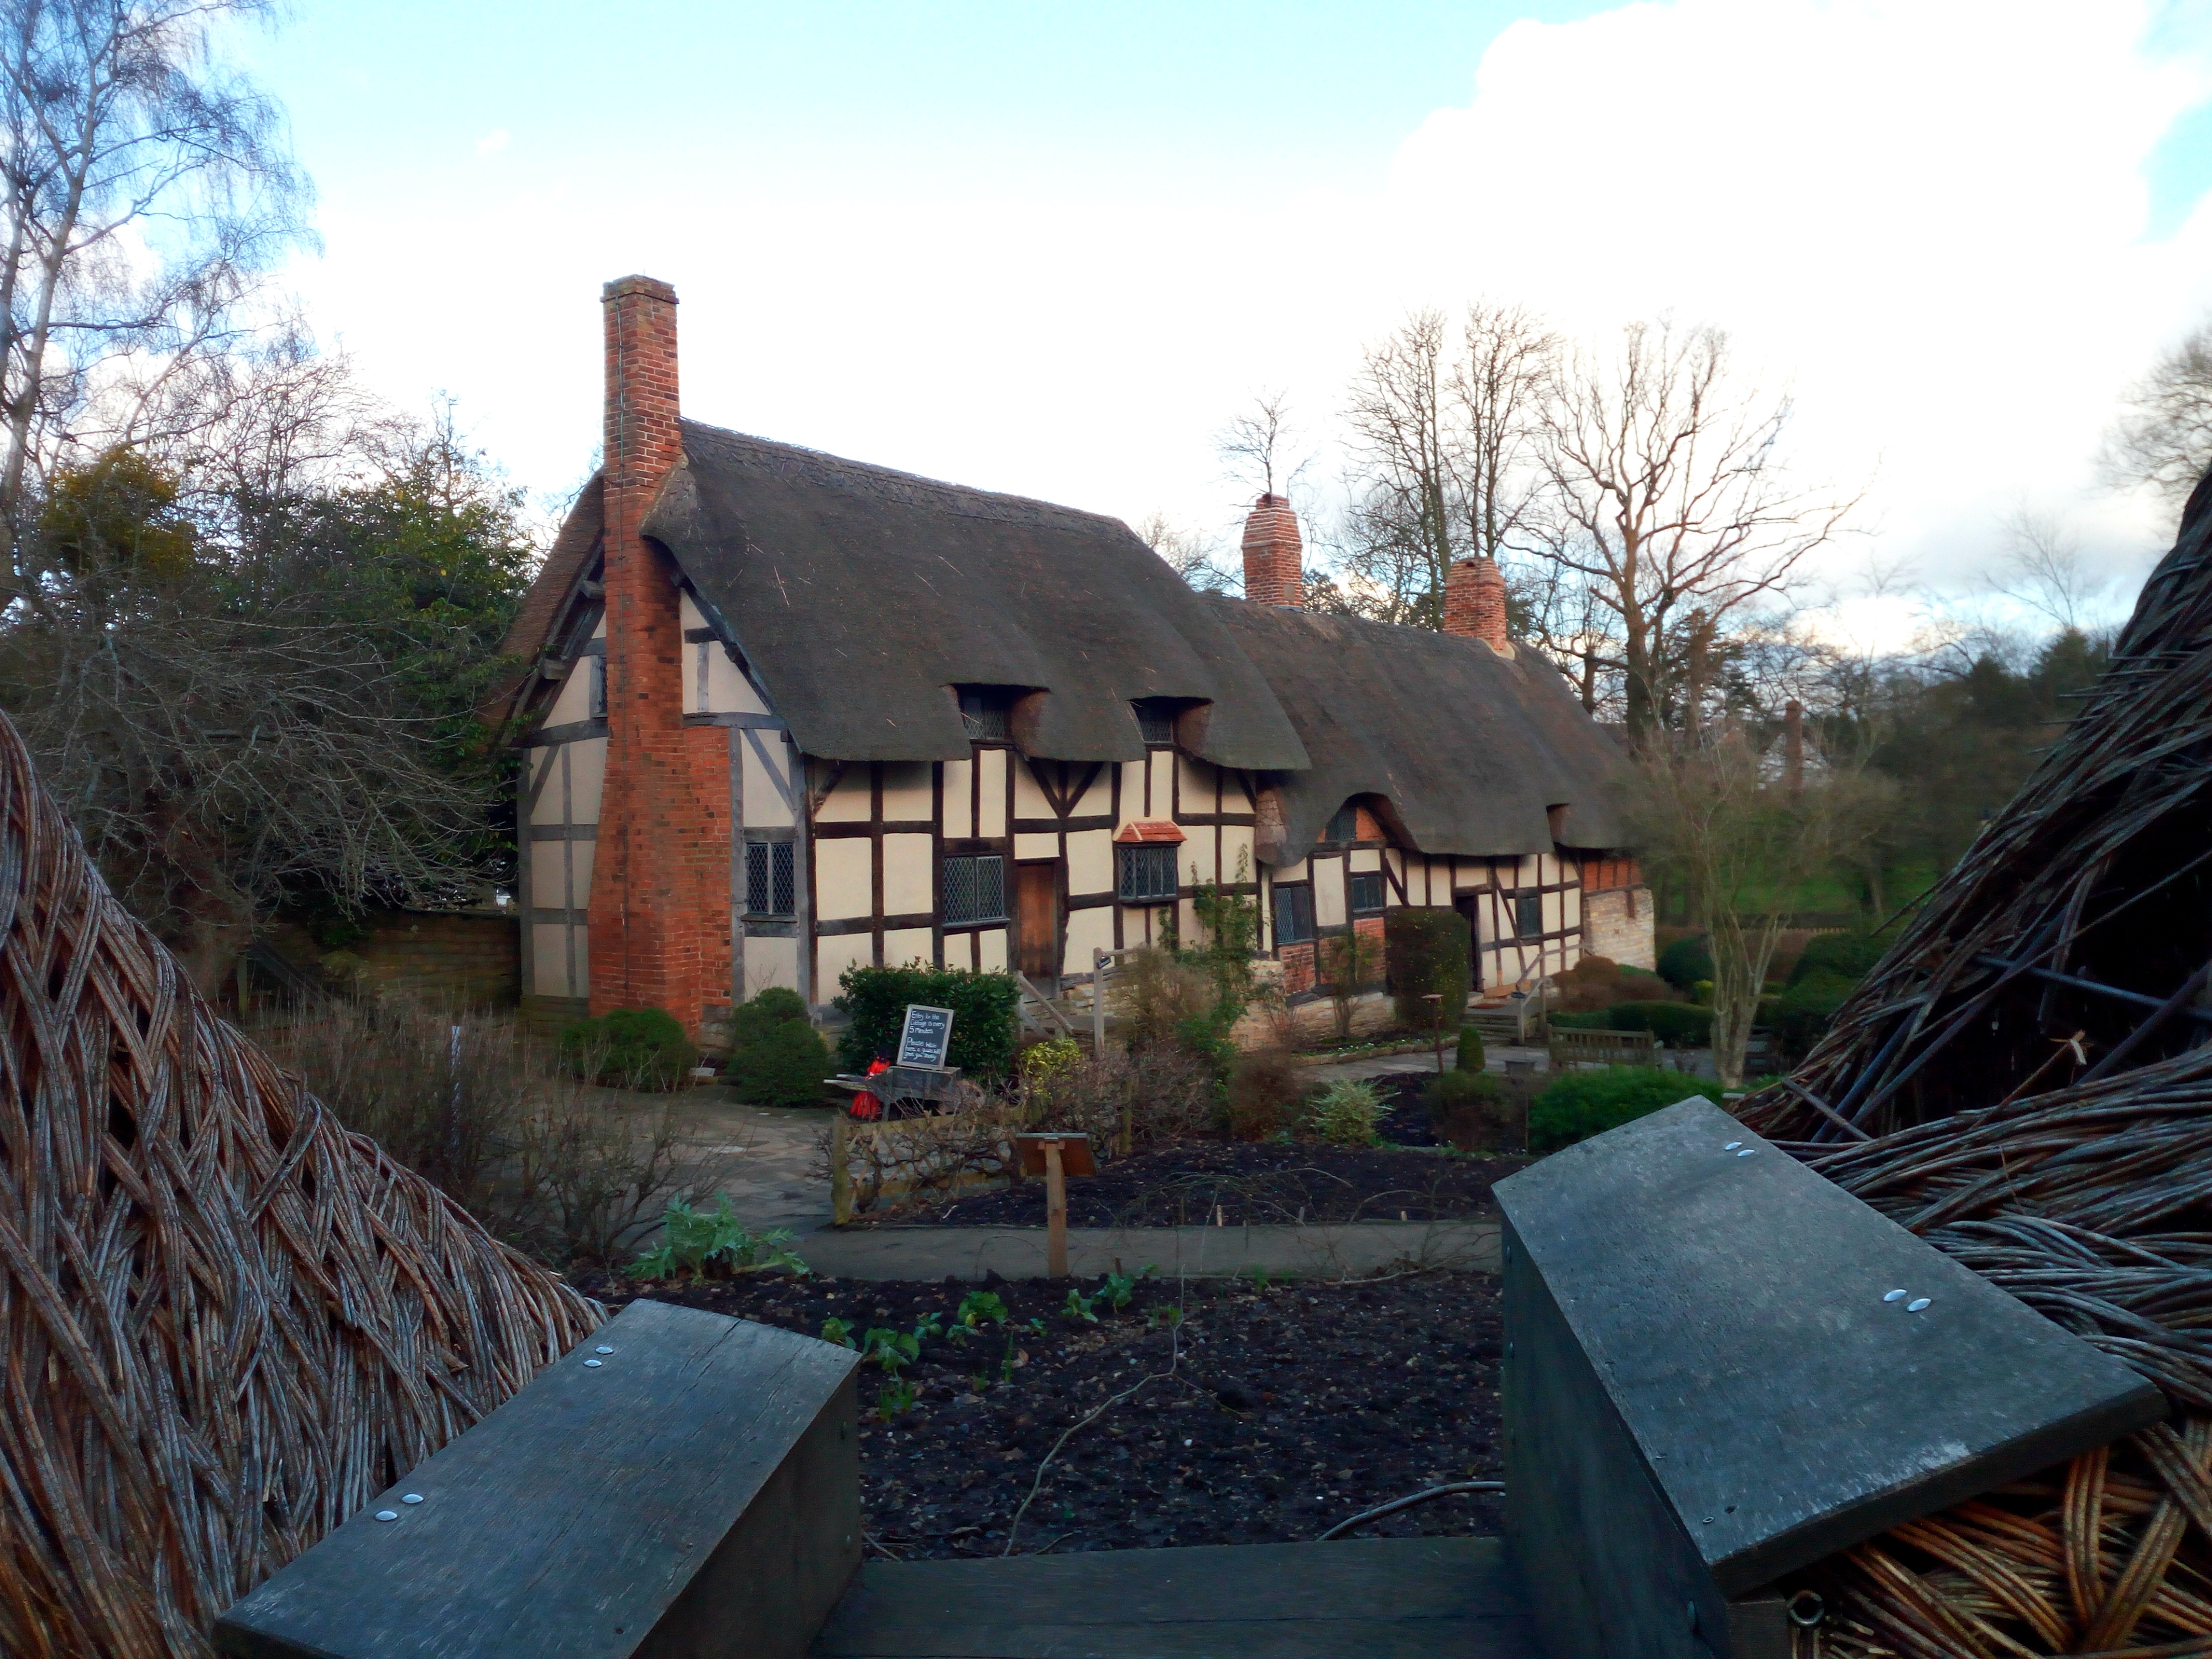 Anne Hathaway's Cottage - Stratford Upon Avon